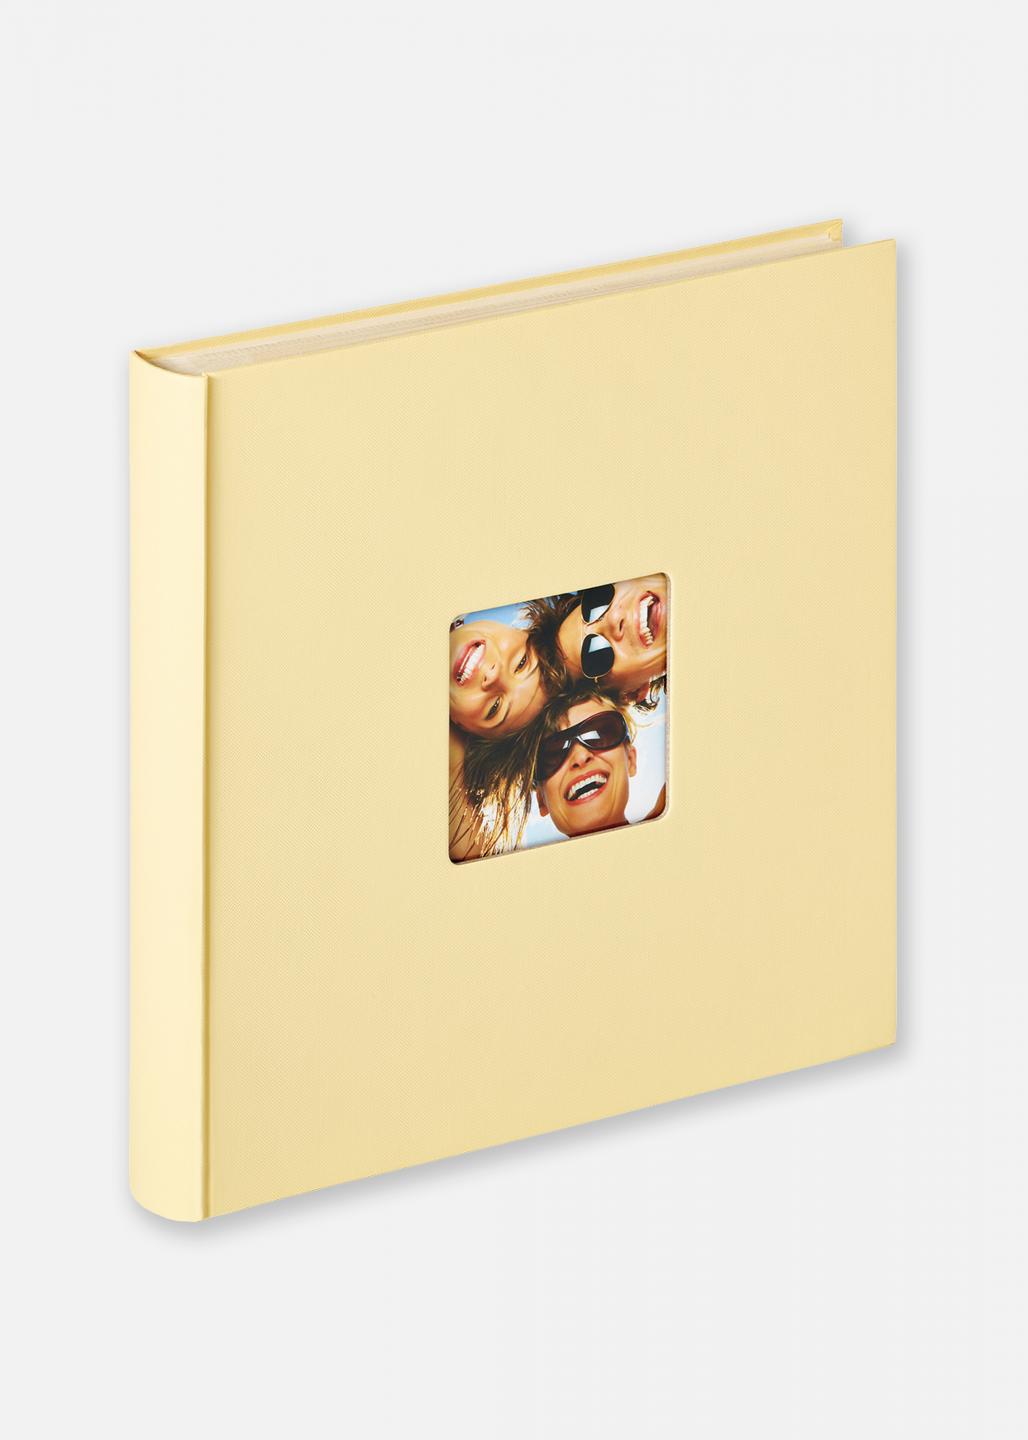 Album photo autocollant Singo, 28 x 31 cm, 20 pages blanches